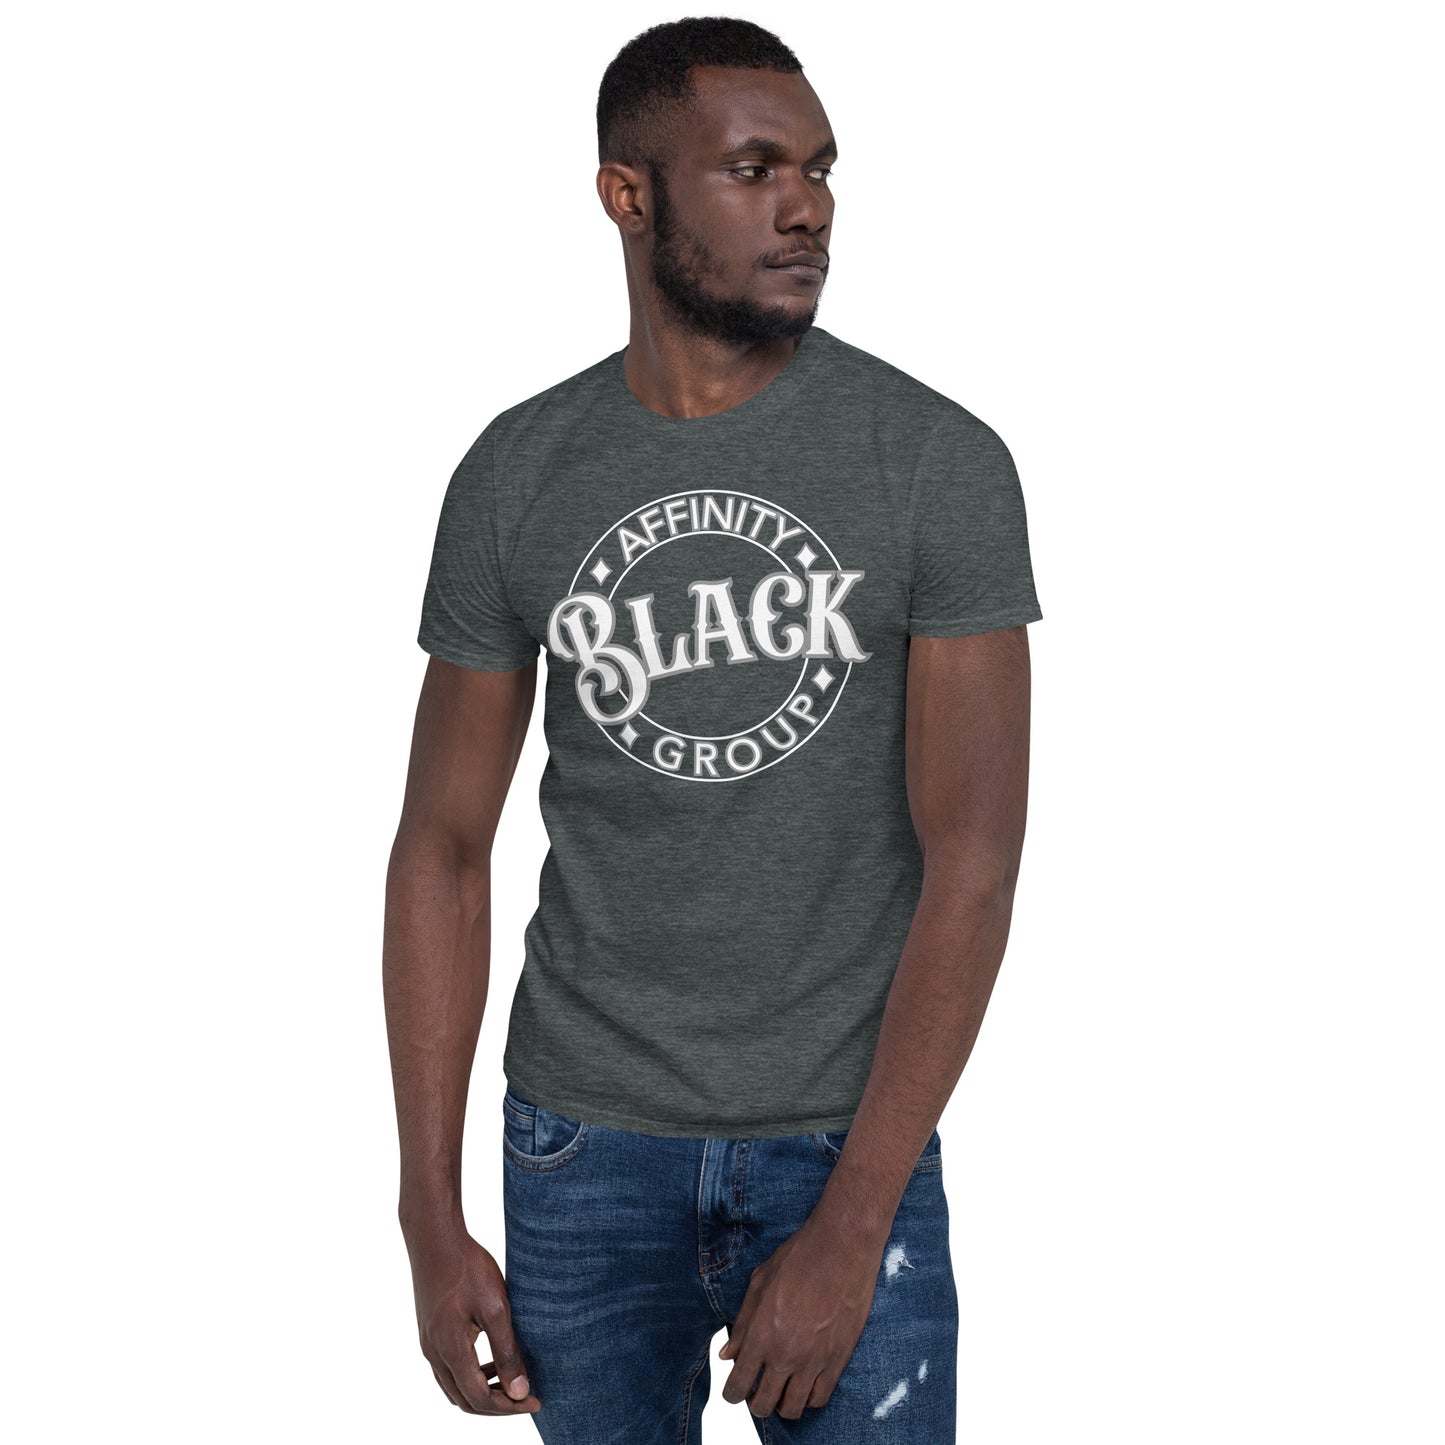 Black Affinity Group WG Short-Sleeve Unisex T-Shirt